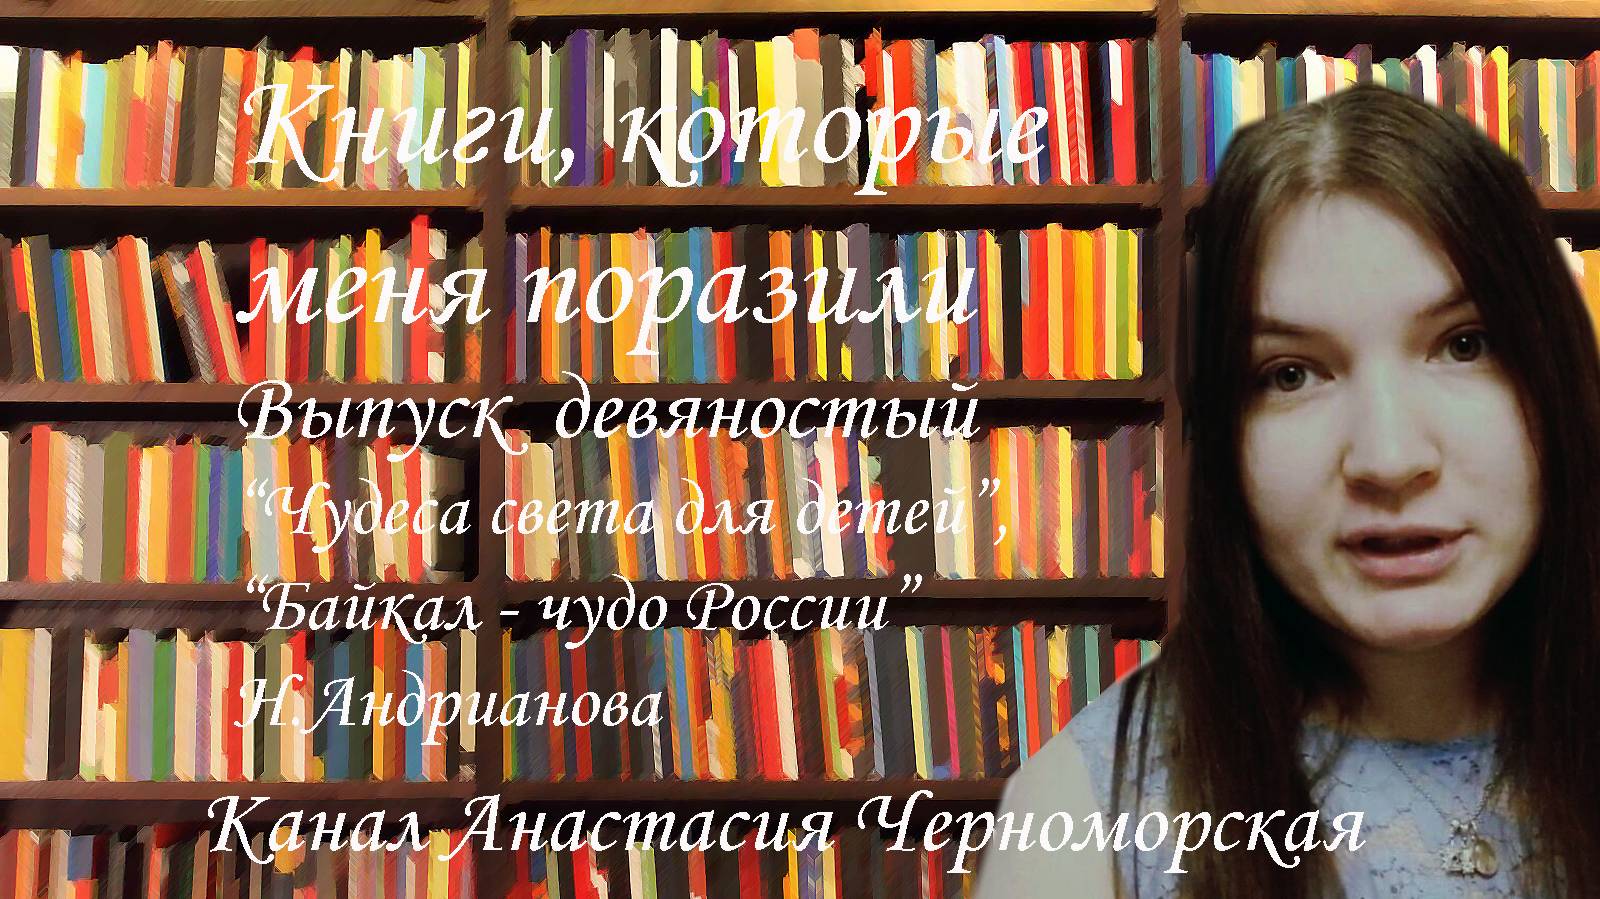 Книги, которые меня поразили: "Чудеса света для детей" Н.Андрианова, "Байкал - чудо России"Выпуск 90